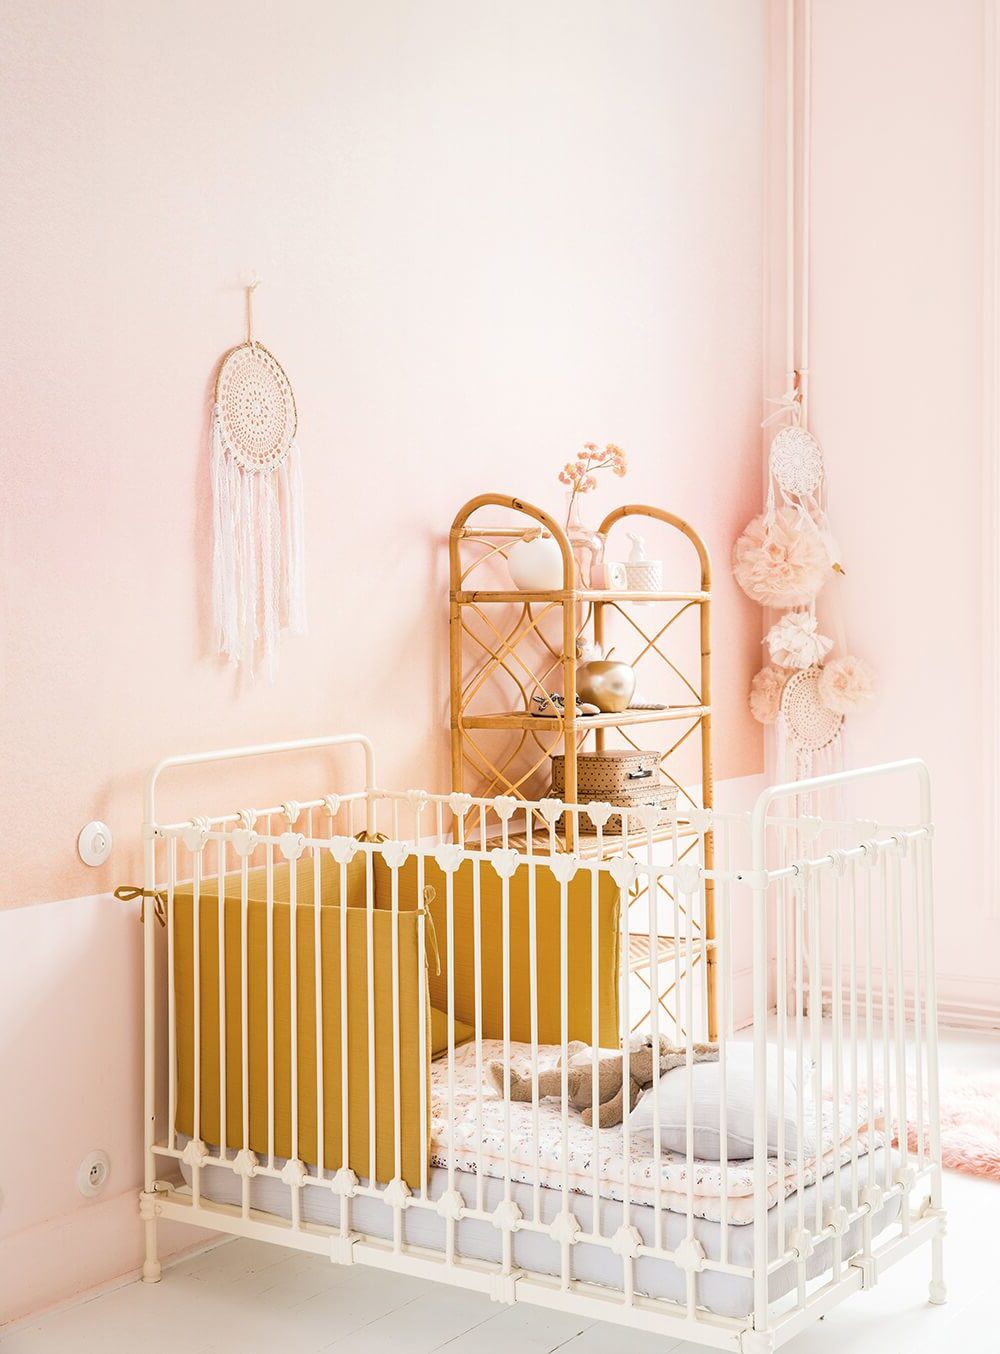 chambre enfant mur rose pastel berceau barreaux blancs plaid jaune moutarde meuble rotin deco murale